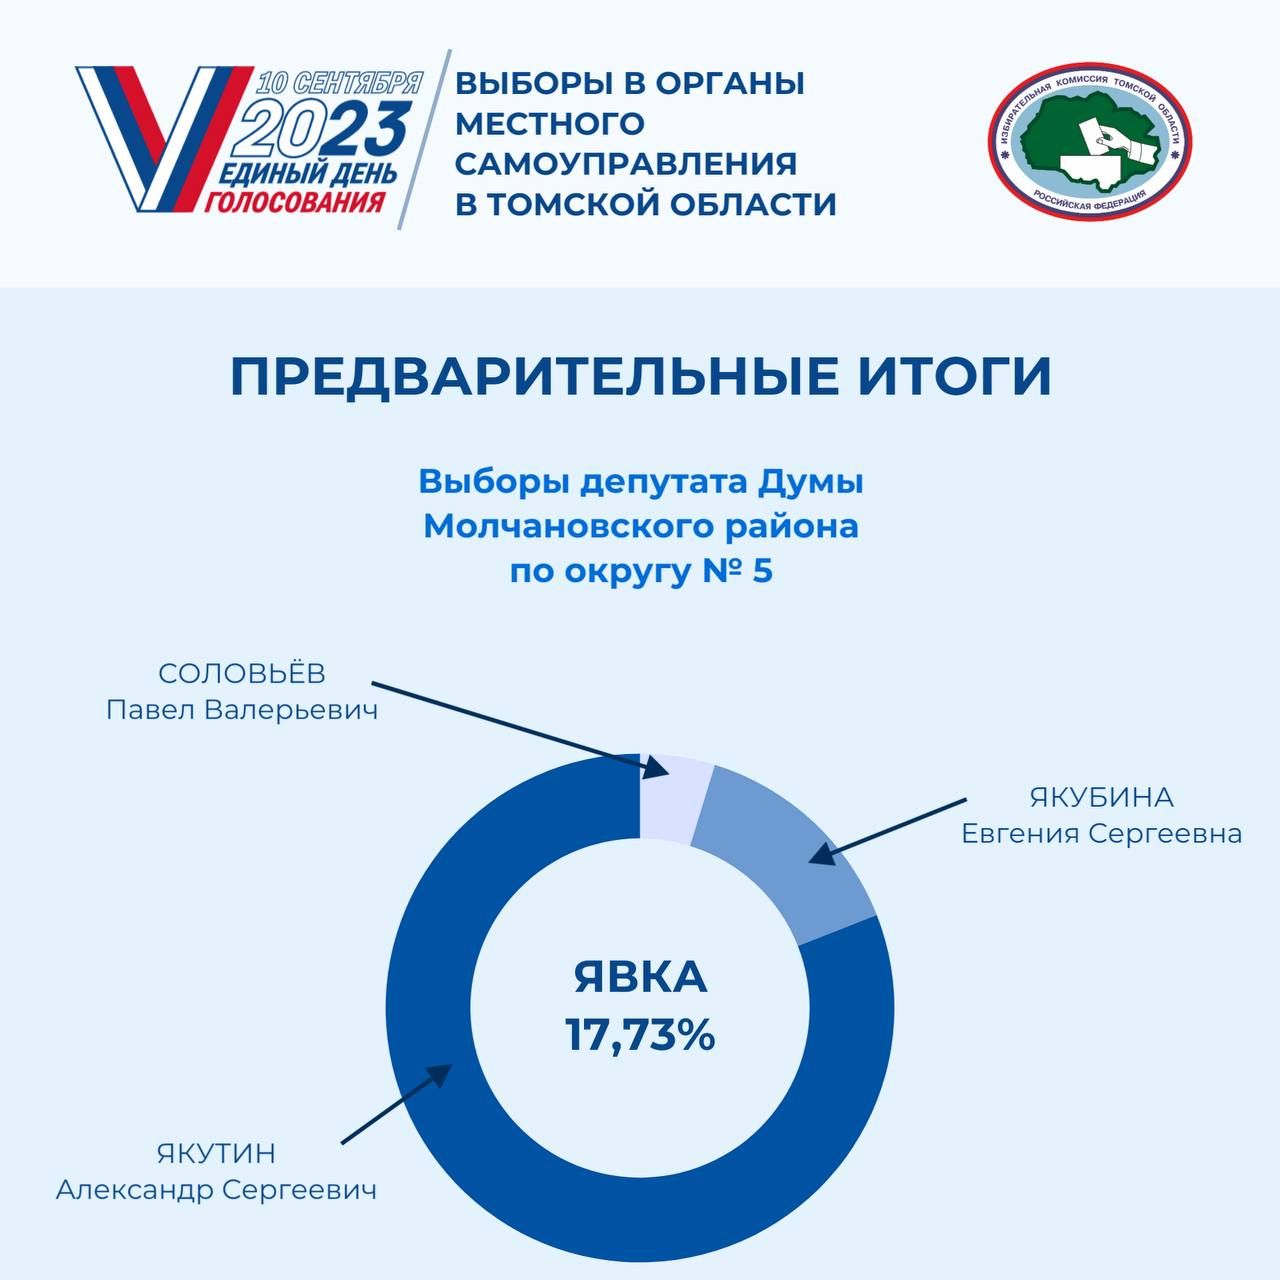 Подведены предварительные итоги голосования на муниципальных выборах в Томской области.